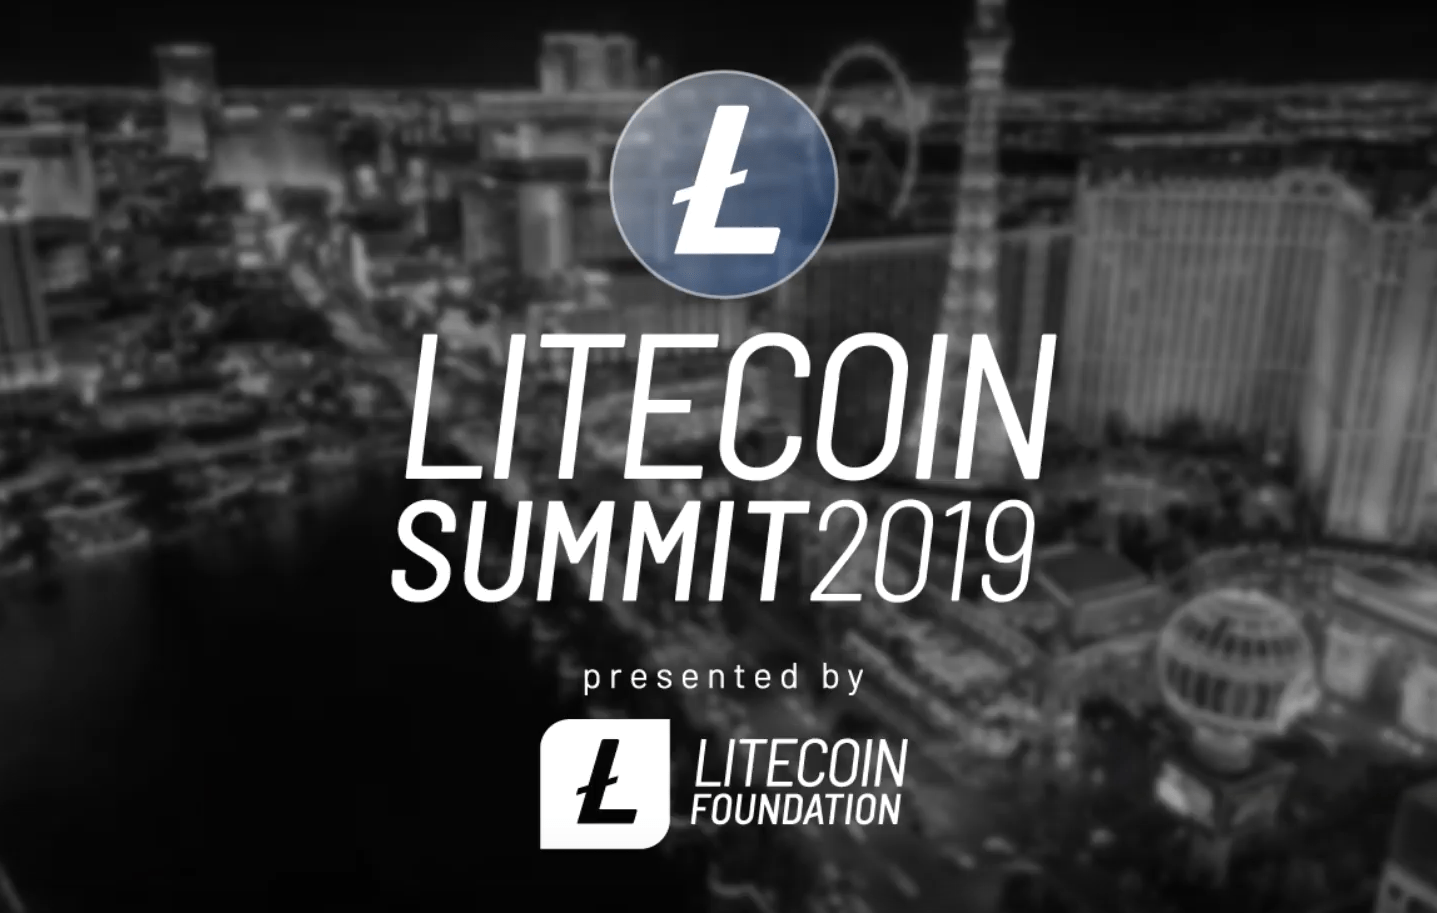 Litecoin Summit 2019: Insights